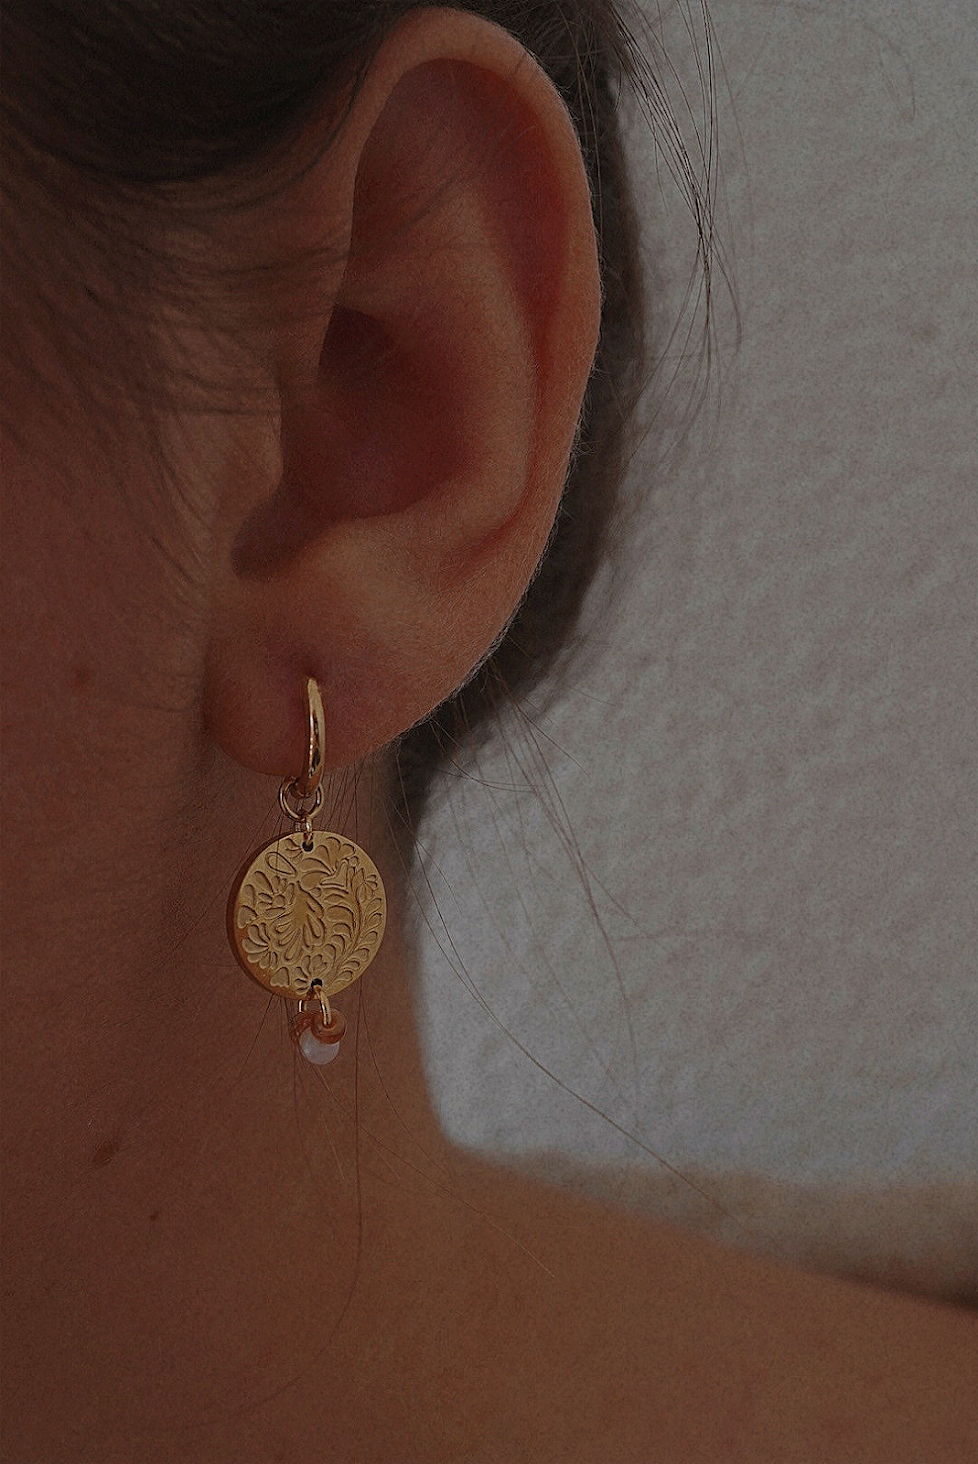 Boucles d'oreilles dorées avec une médaille motifs fleuris et perles marrons.